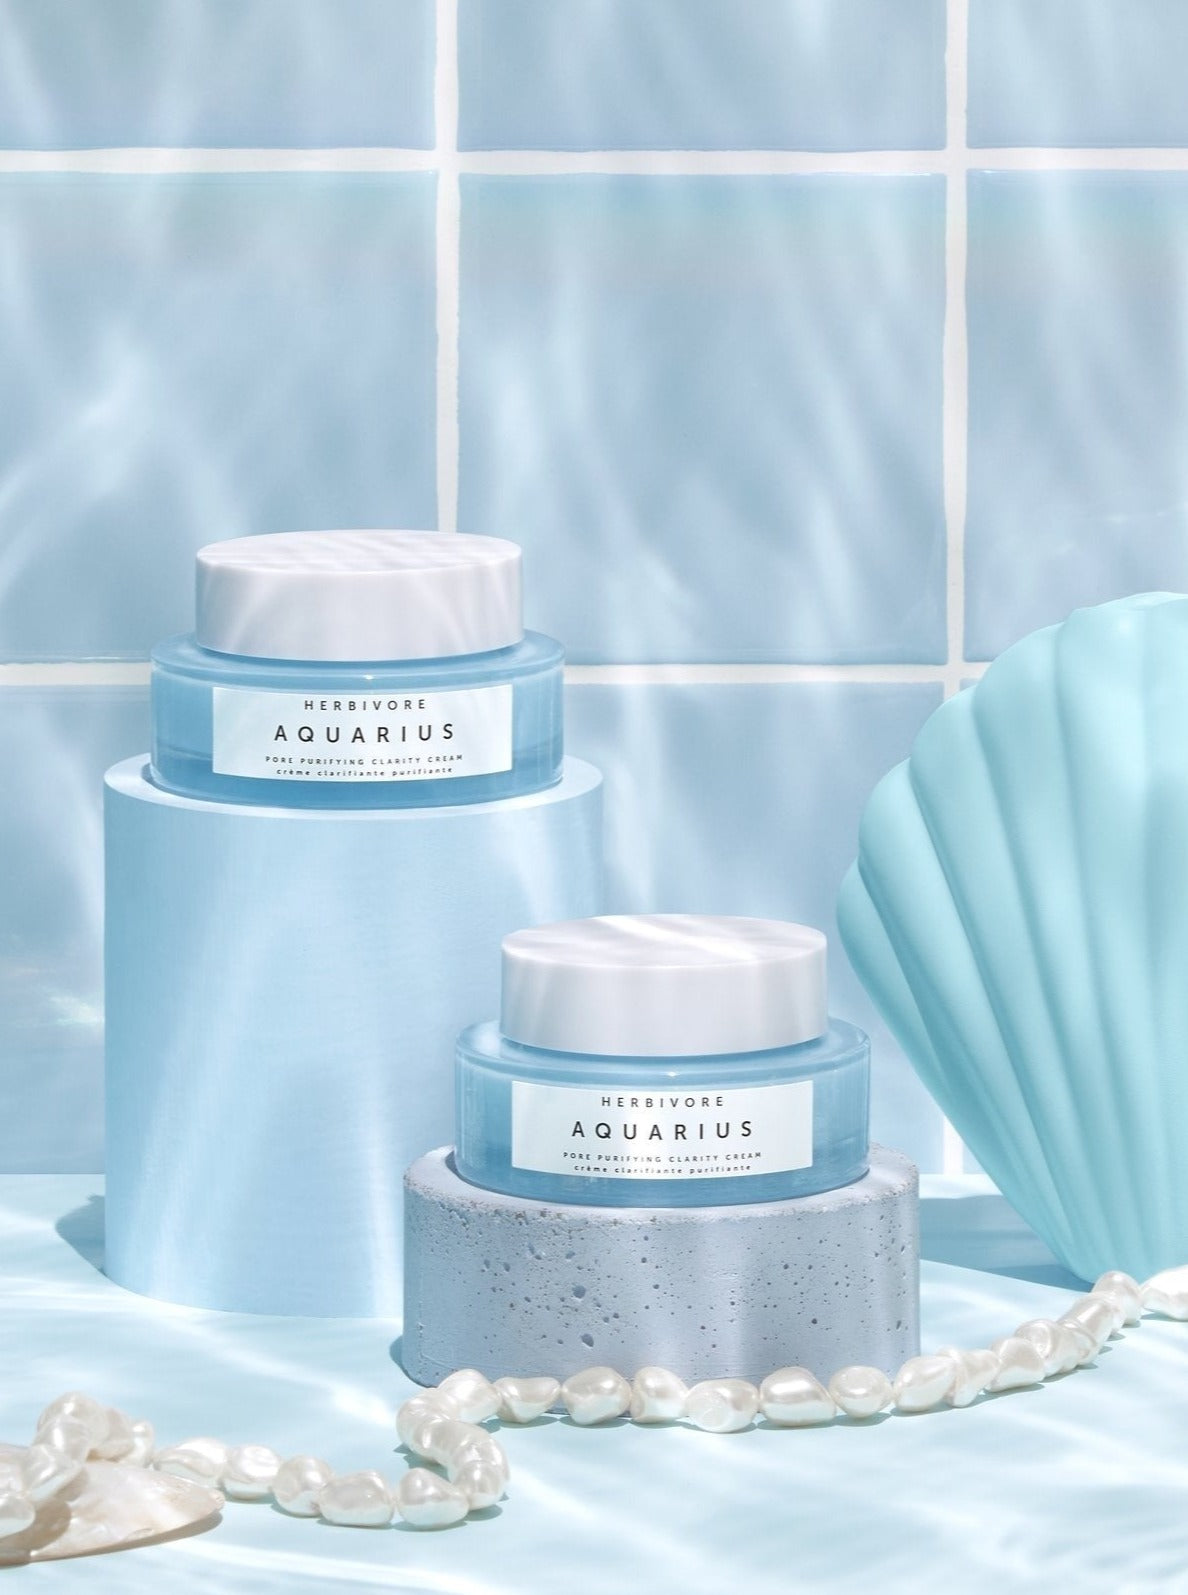 HERBIVORE BOTANICALS Aquarius Pore Purifying Clarity Cream Lifestyle Picture